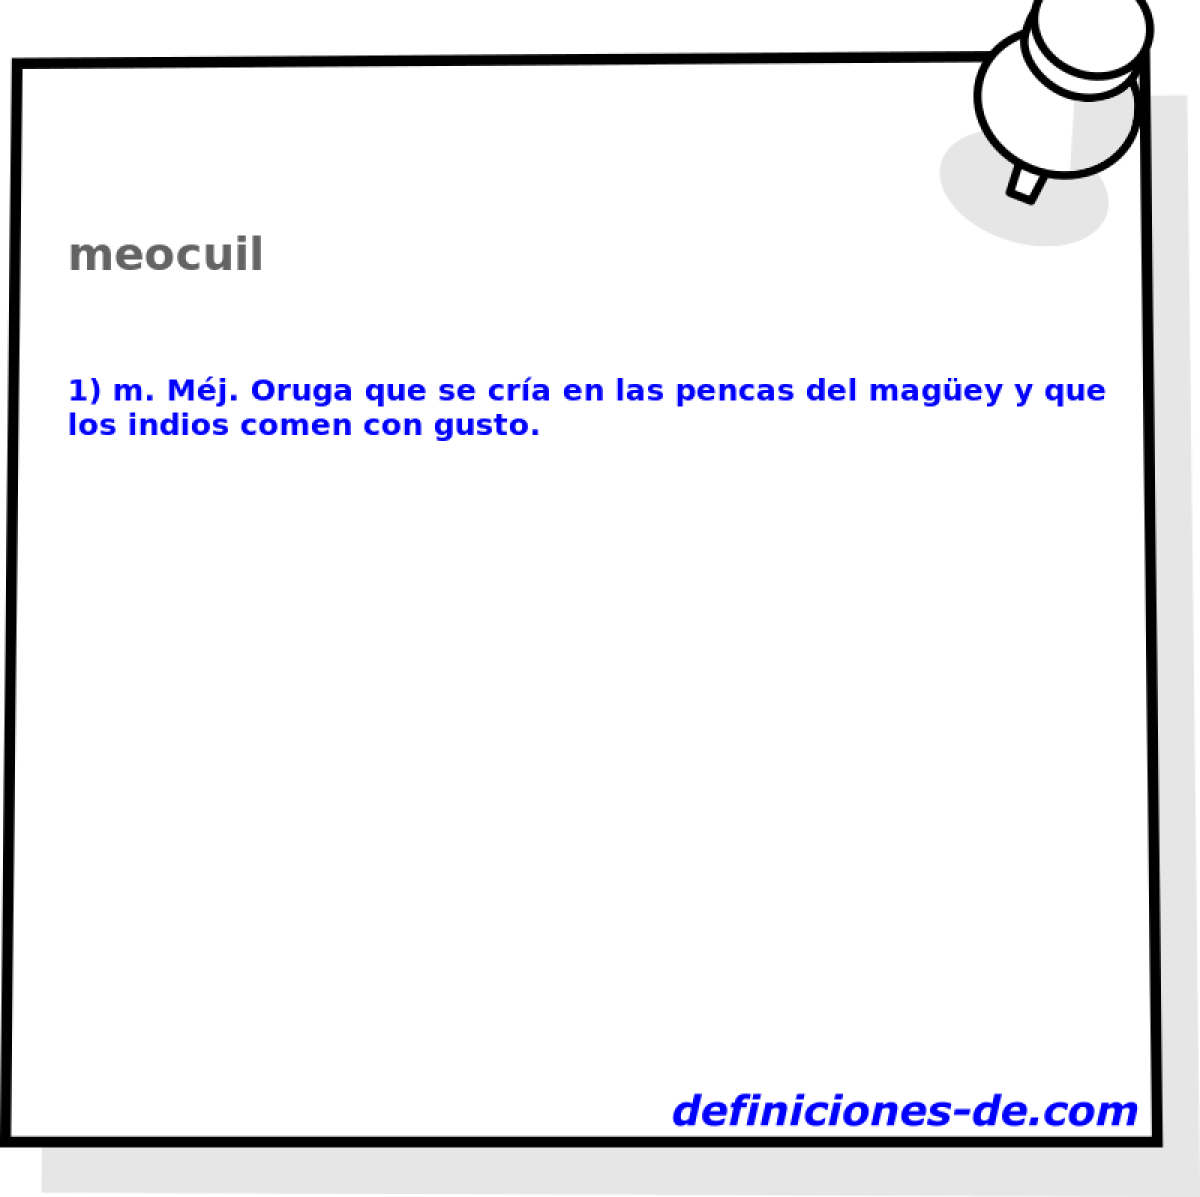 meocuil 